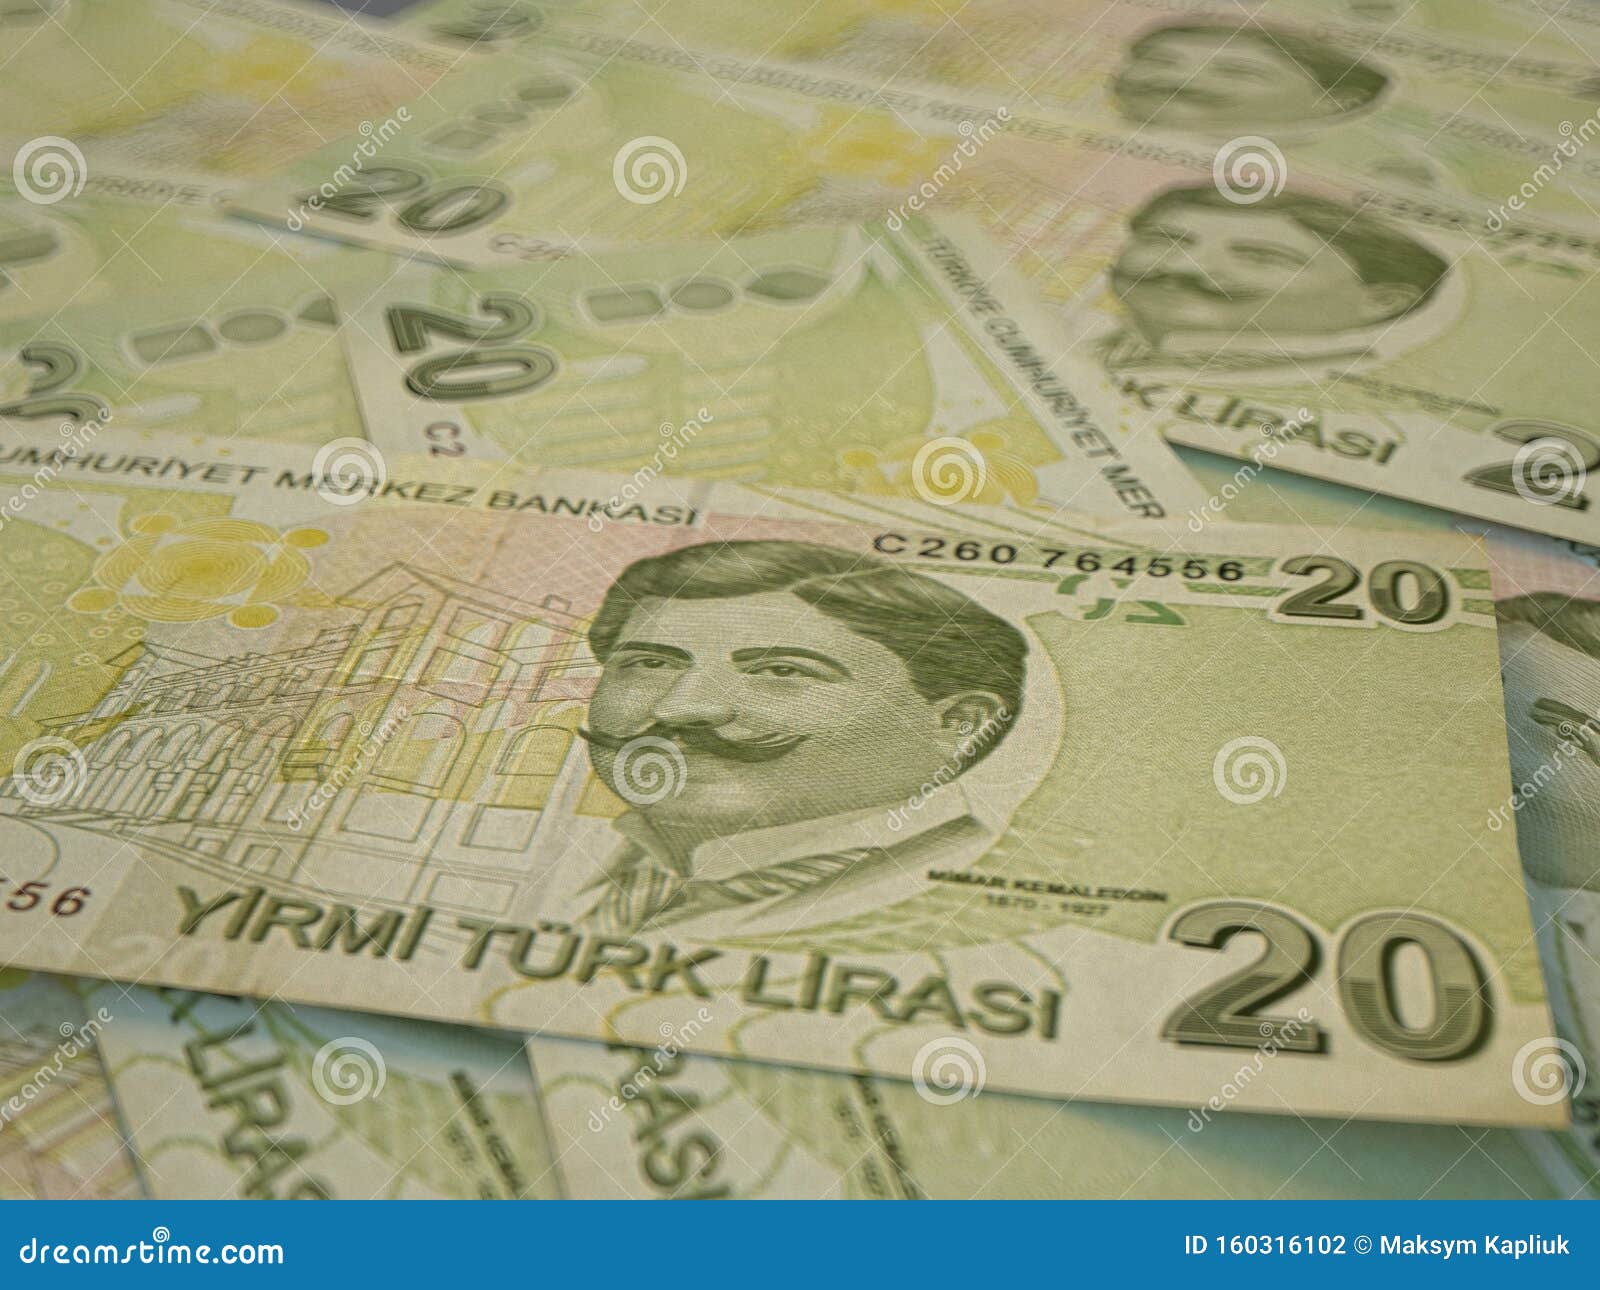 Турецкая валюта к рублю на сегодня